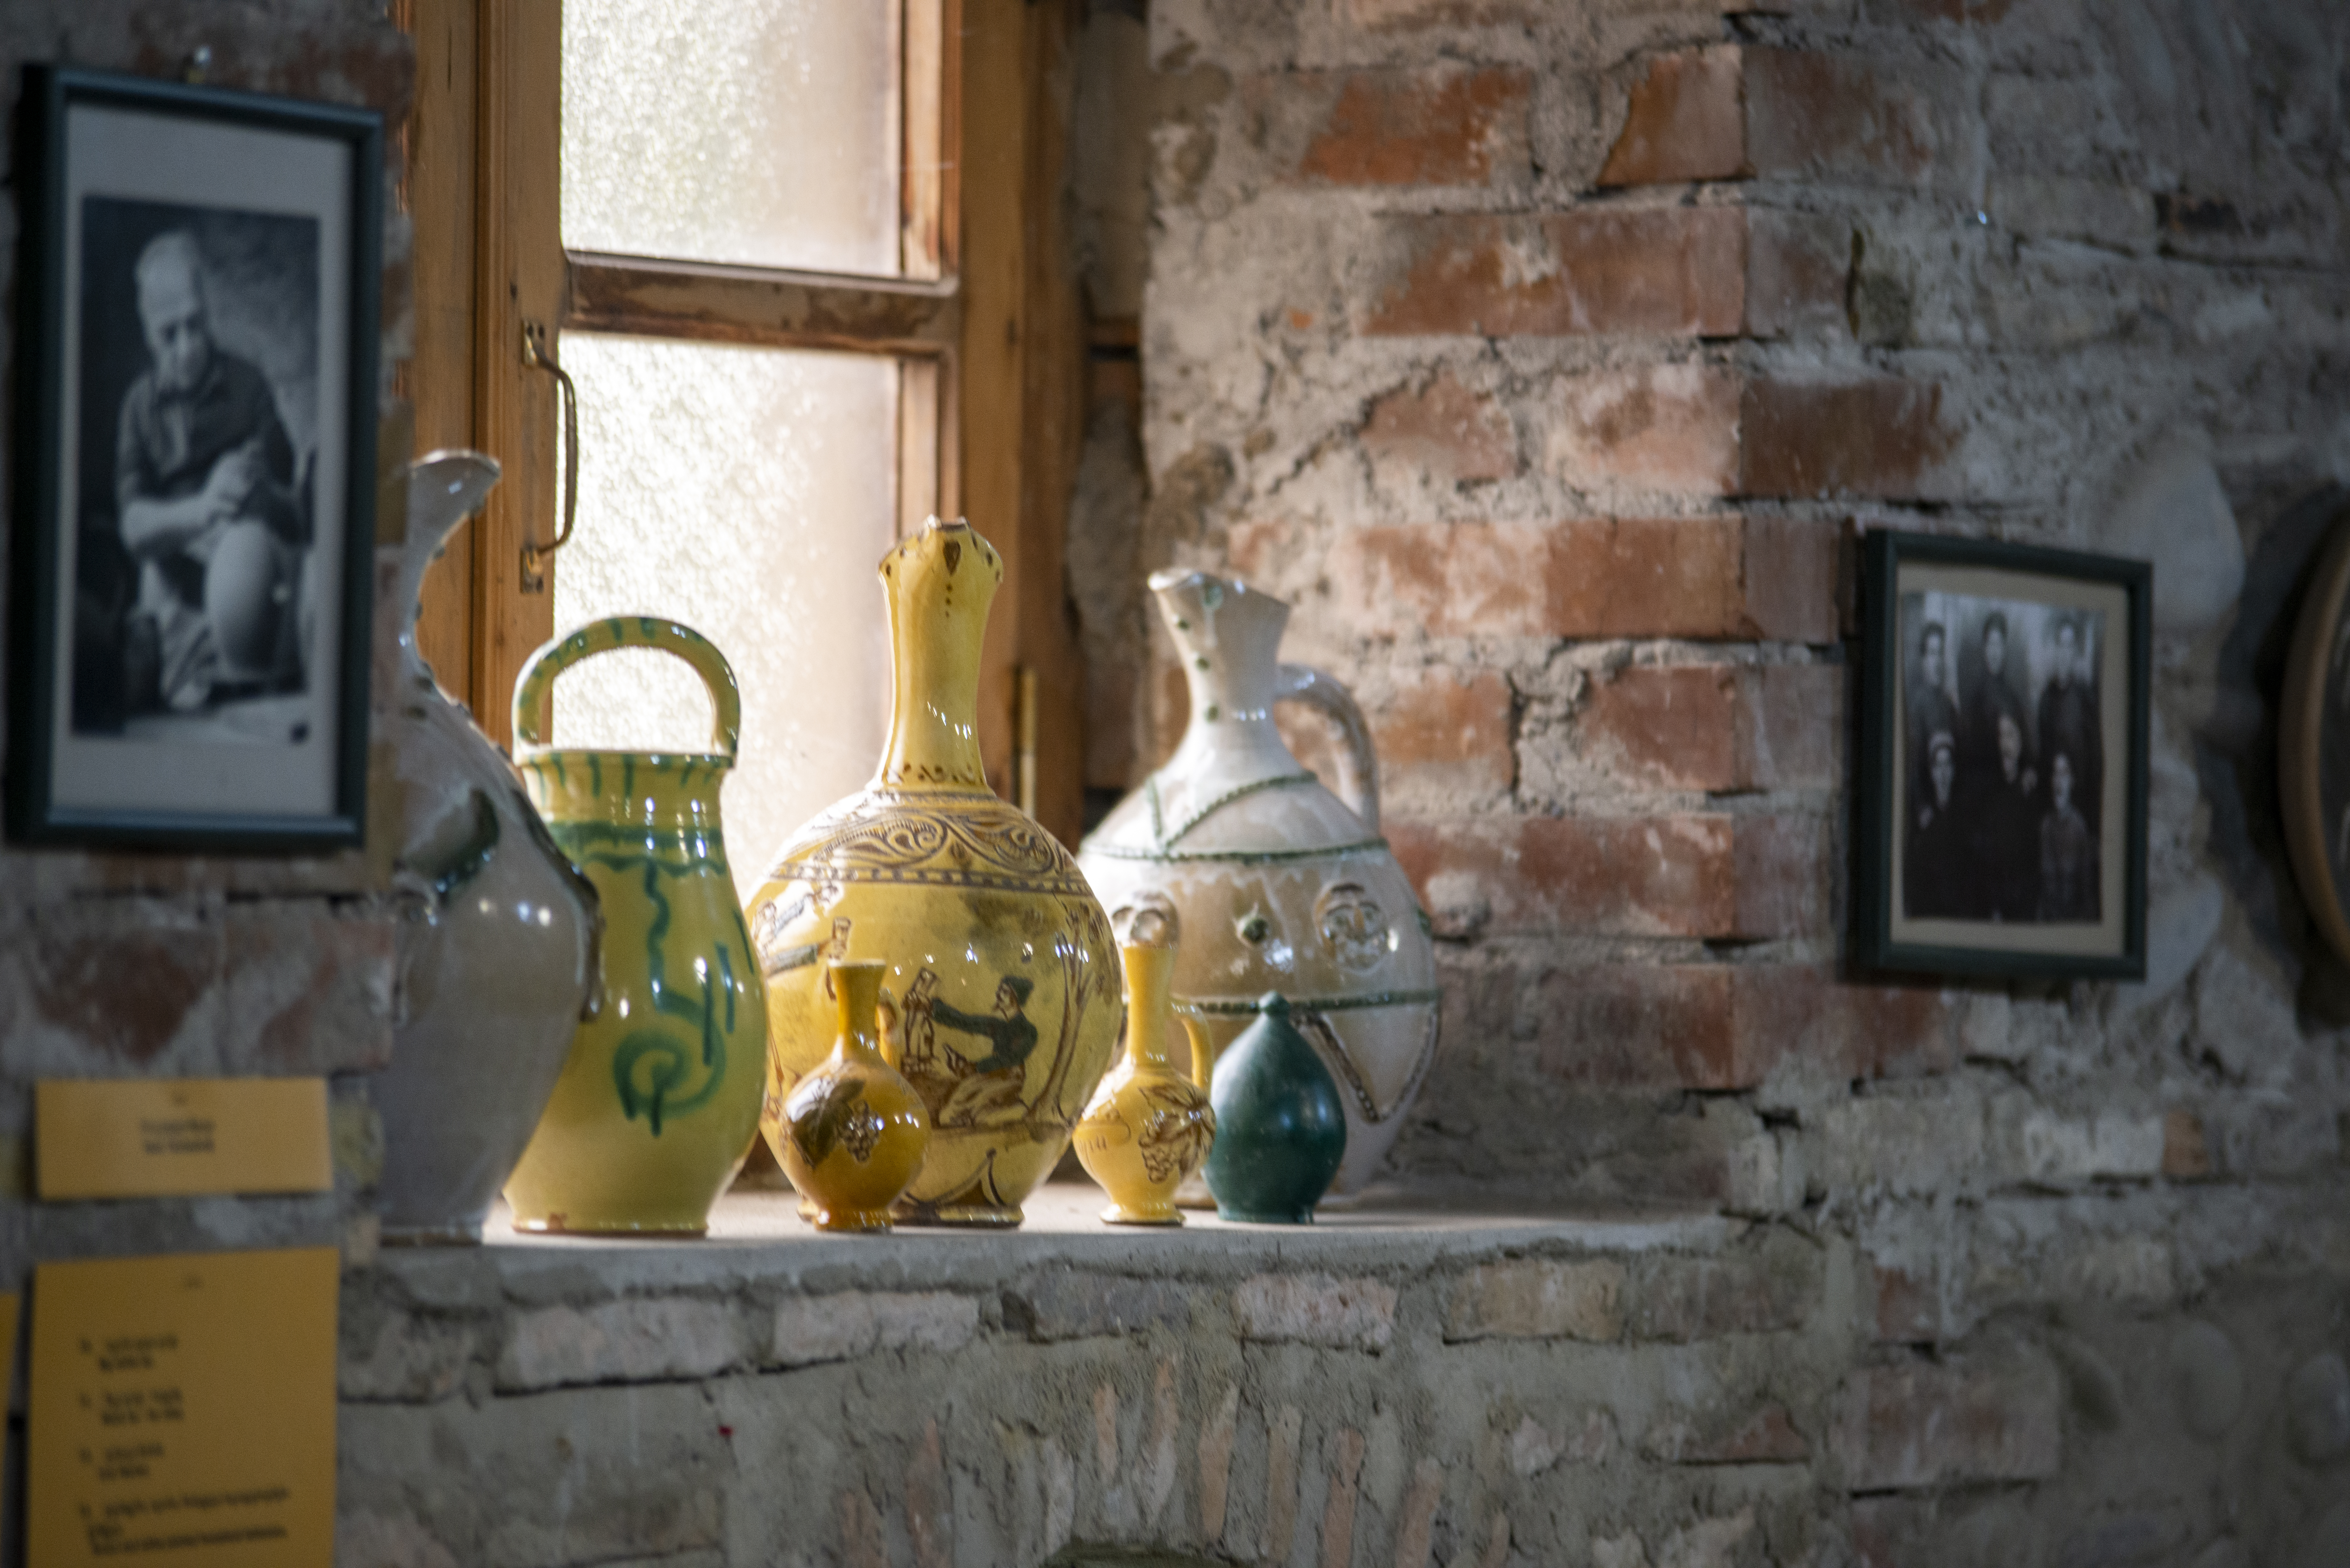 Giorgi Tatulashvili Ceramics Studio and Museum